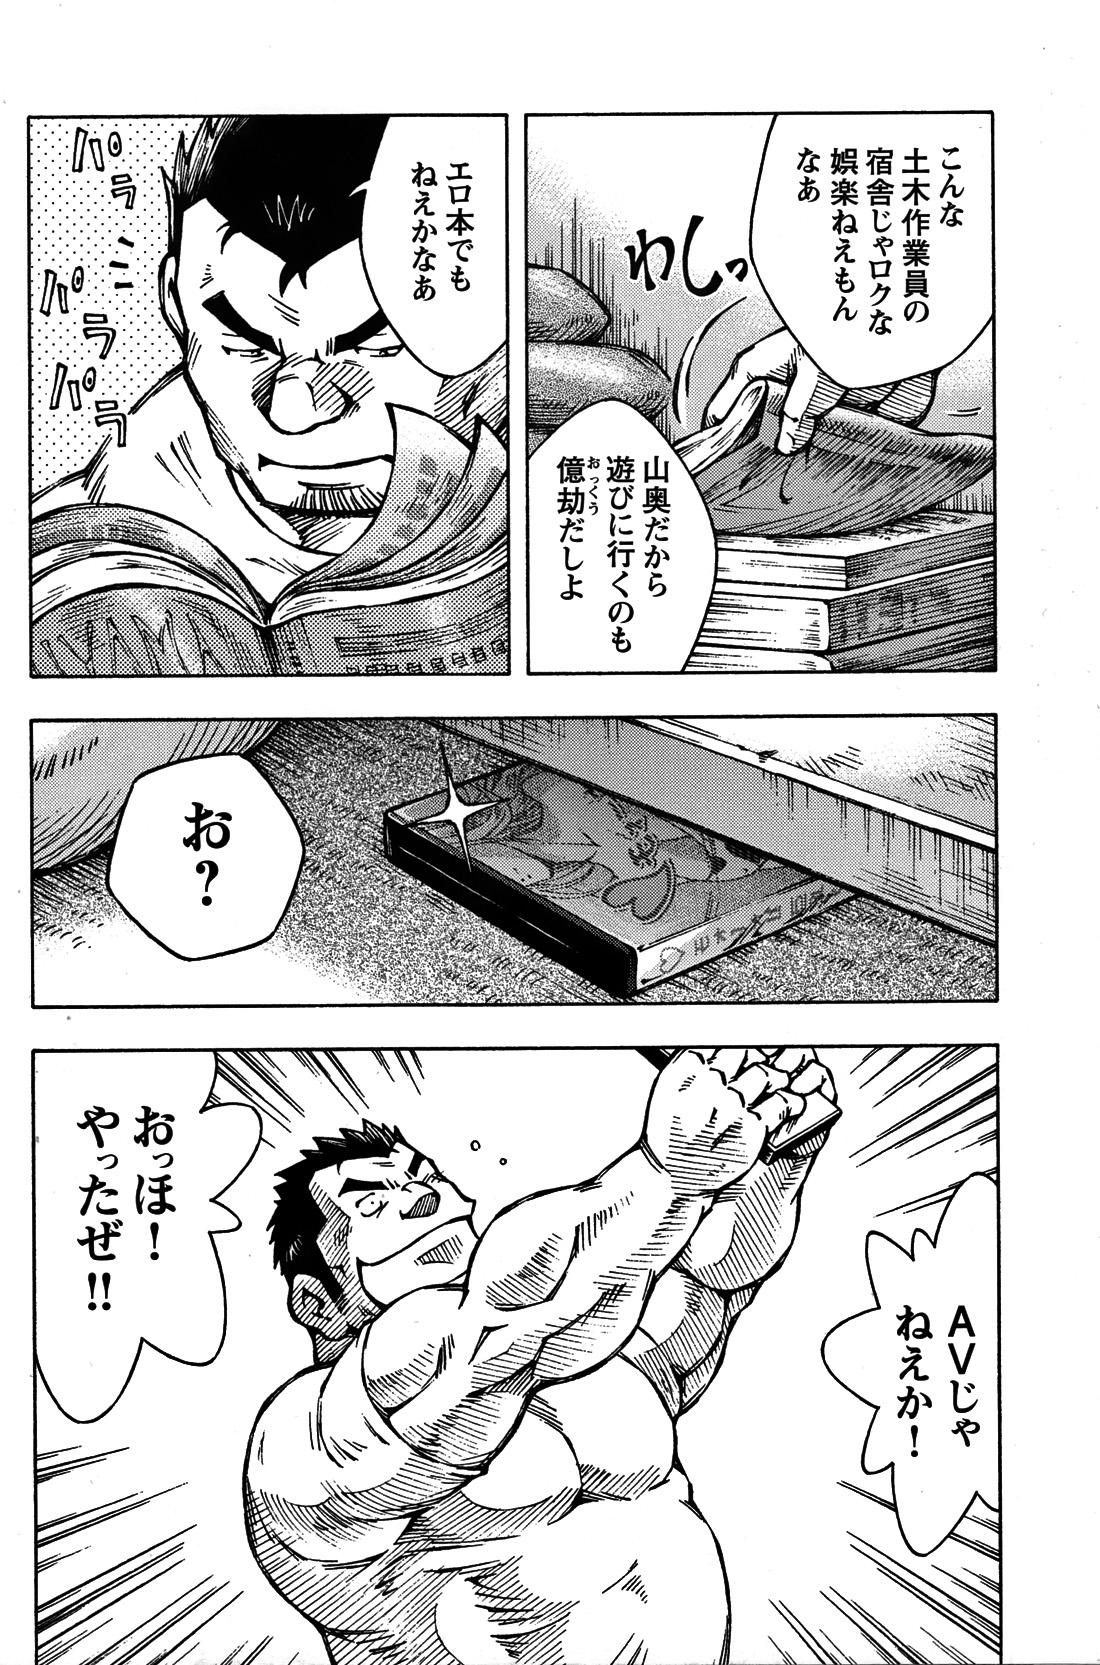 Comic G-men Gaho No. 06 Nikutai Roudousha page 13 full